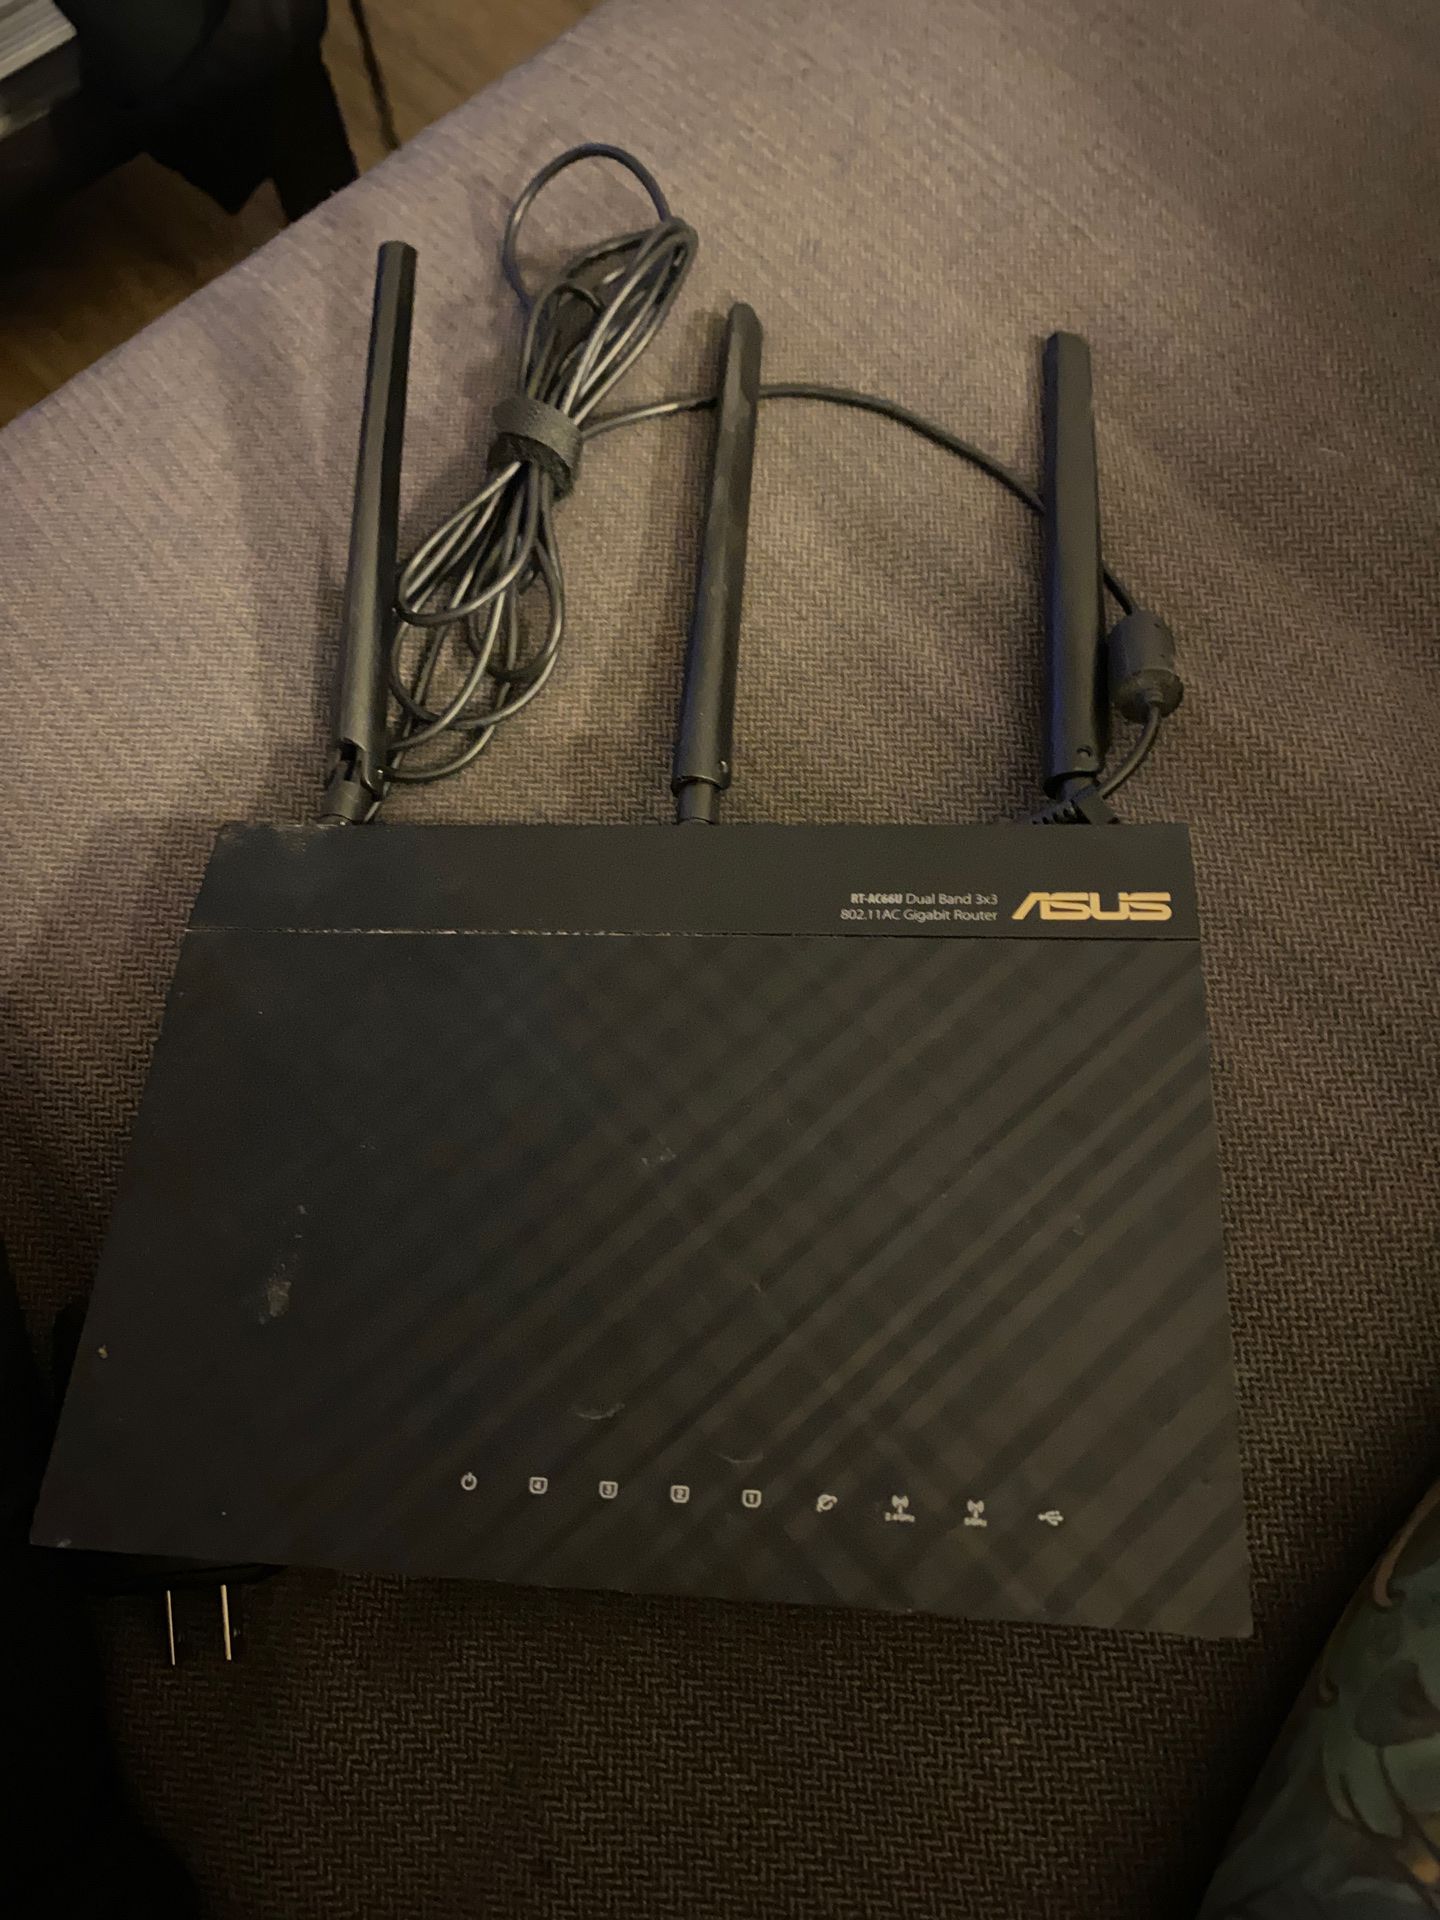 Asus-AC66U router